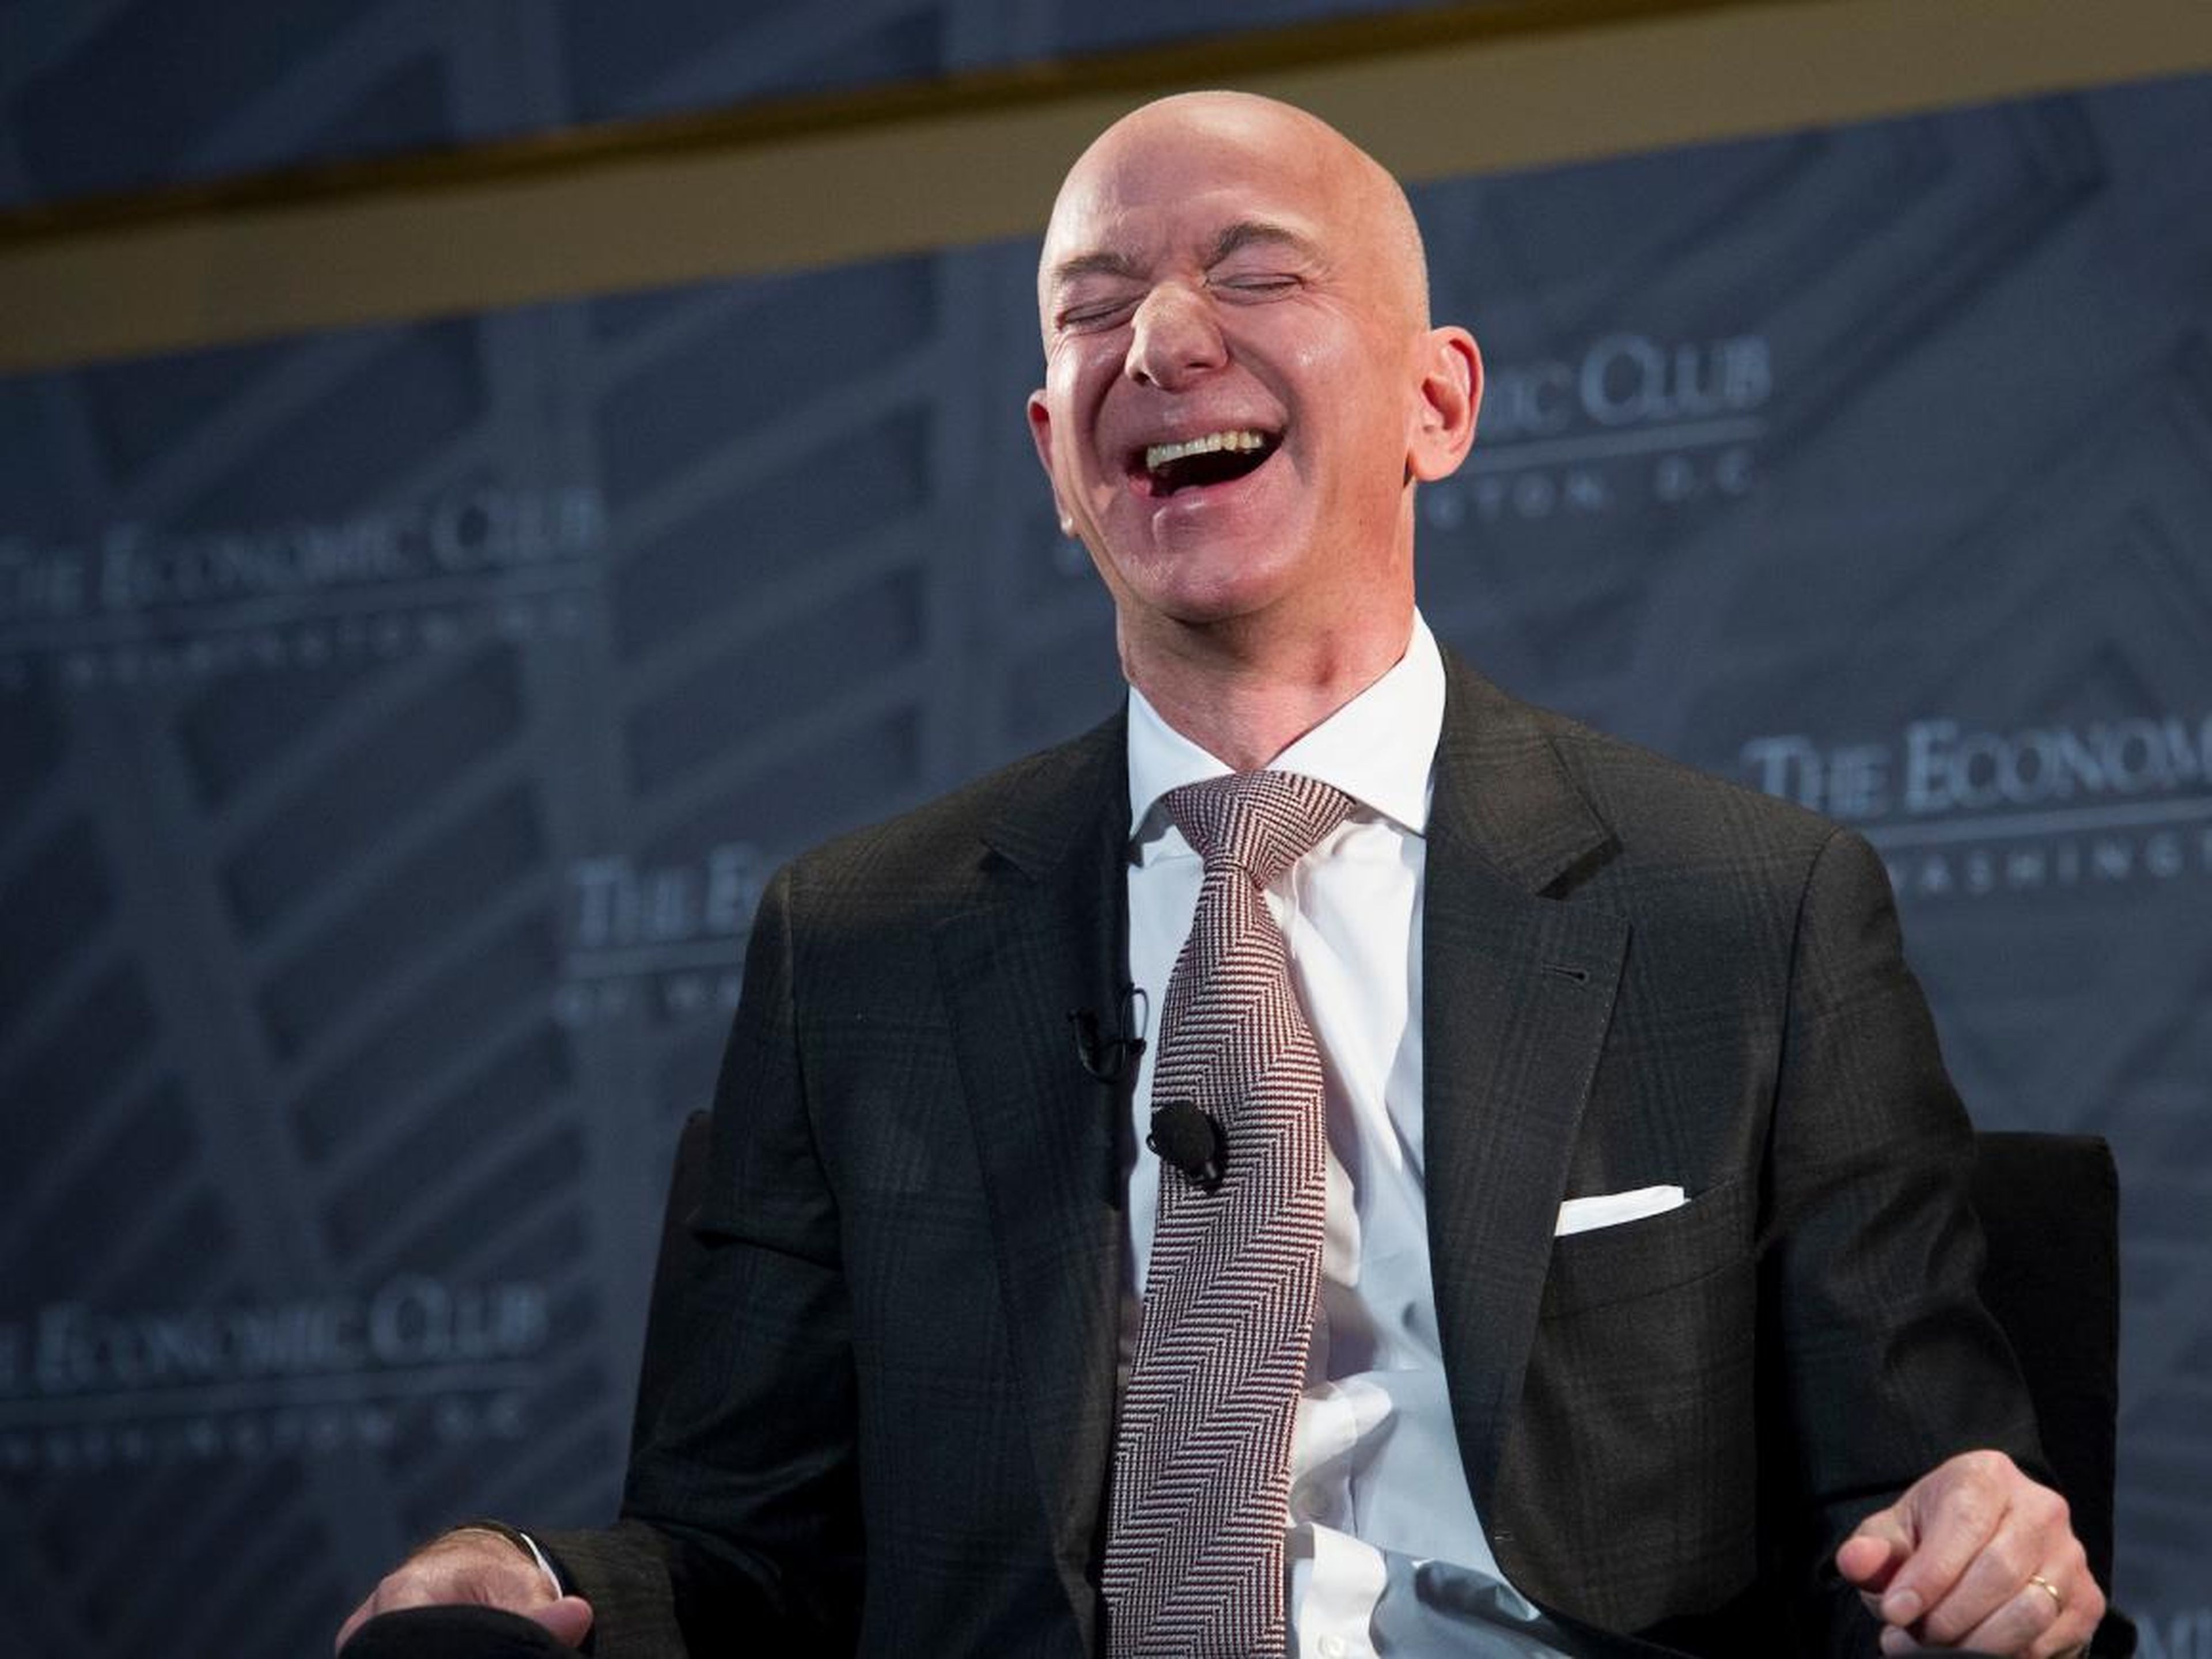 El CEO de Amazon, Jeff Bezos.